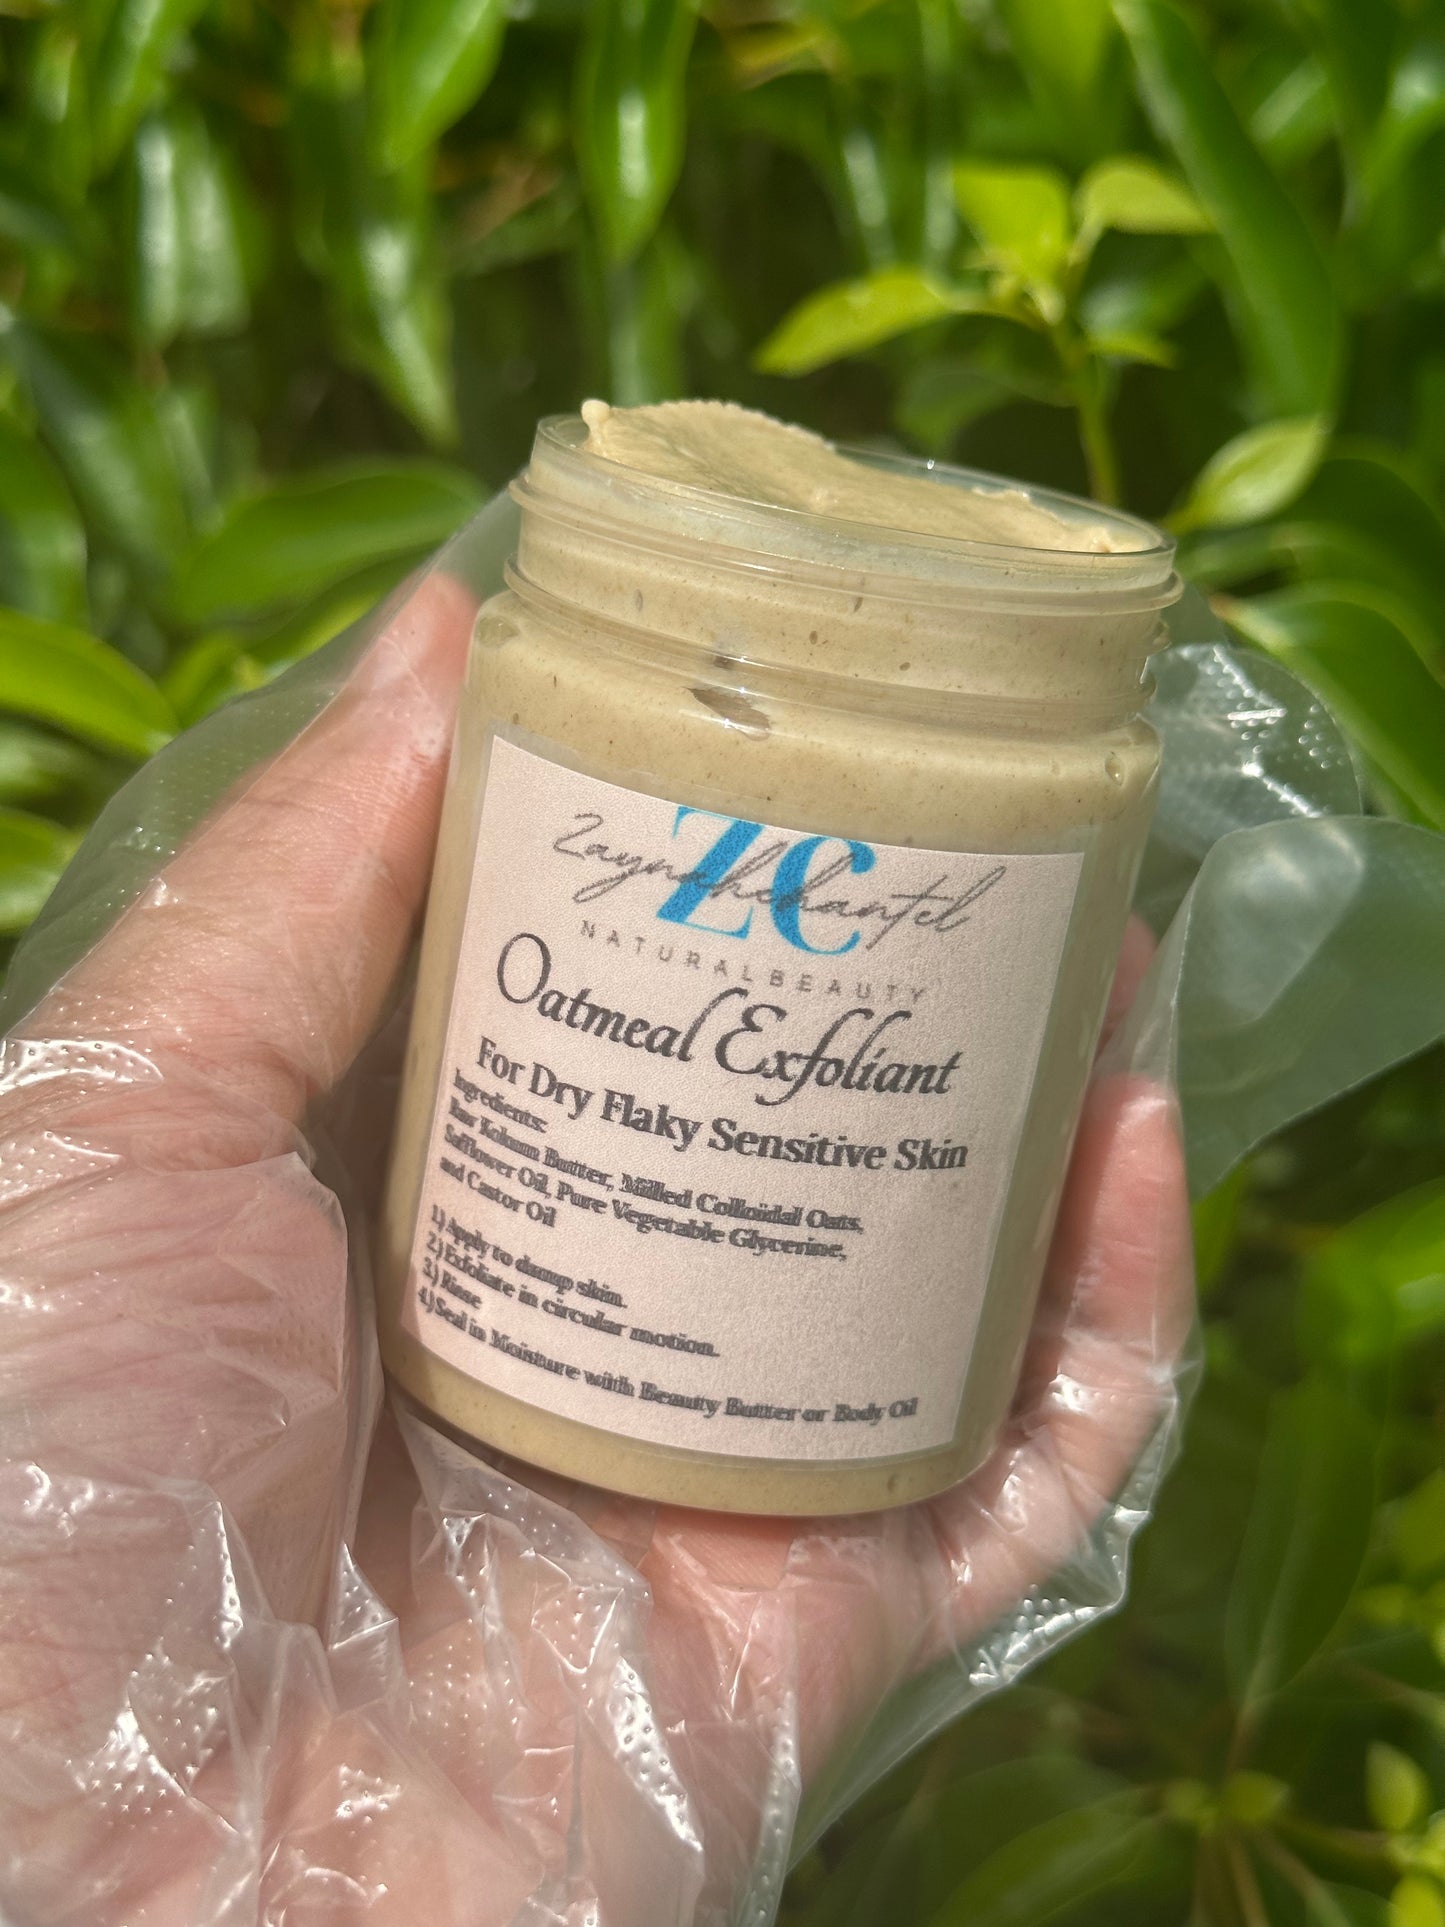 Oatmeal Face Exfoliant for sensitive skin